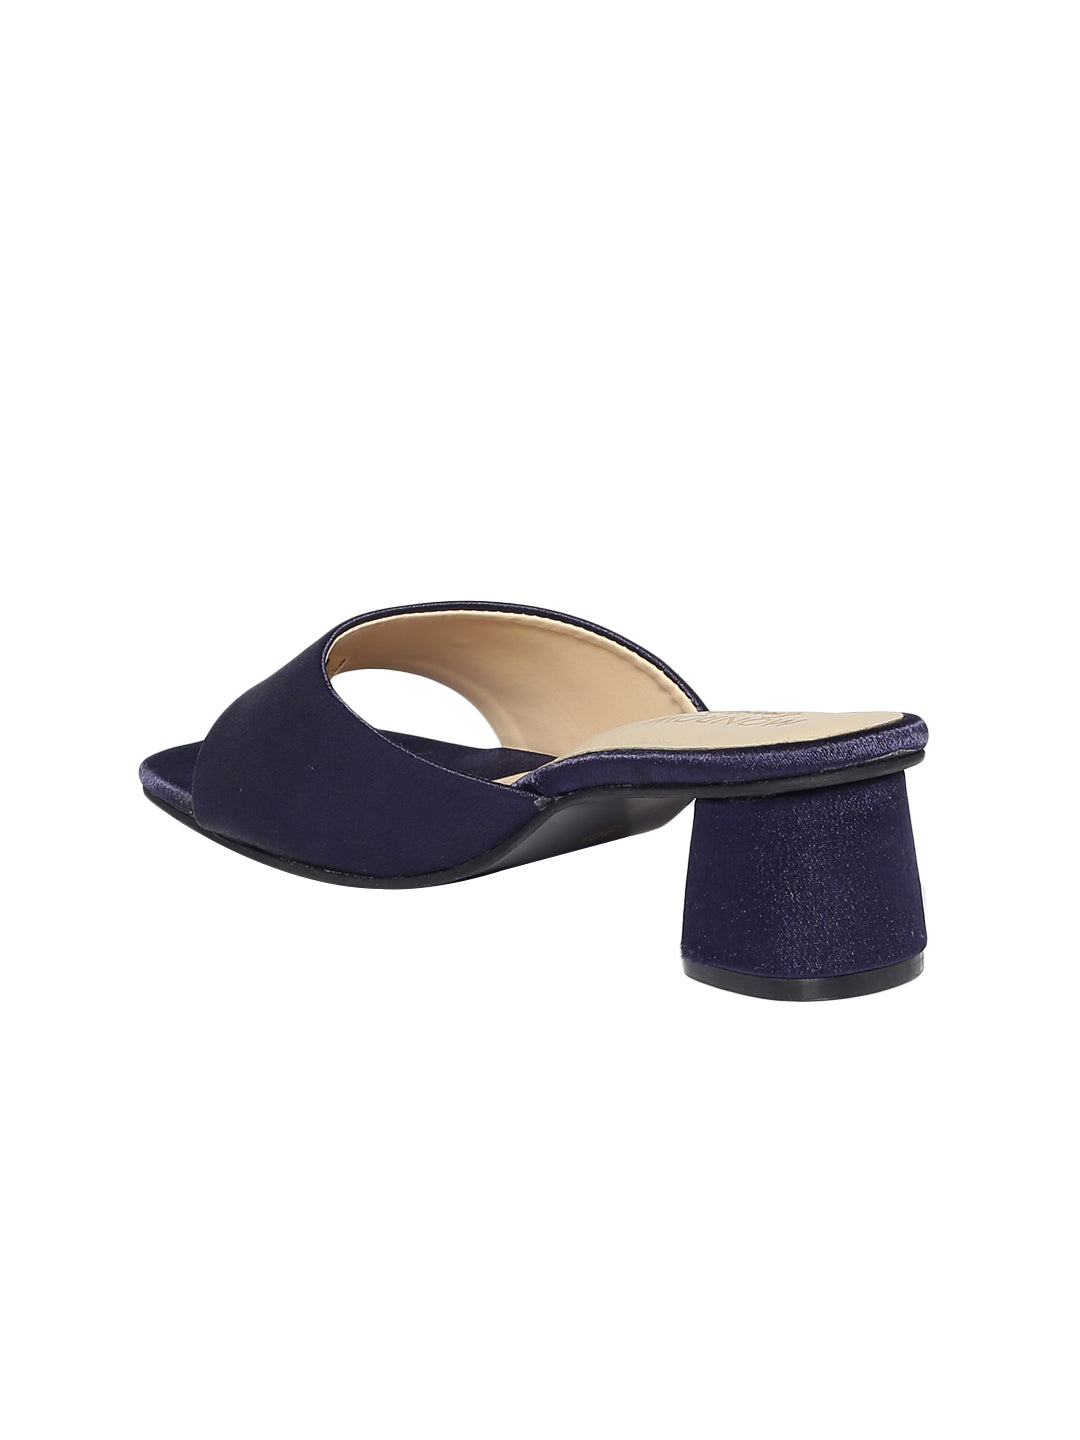 Odeta Navy Blue Heels